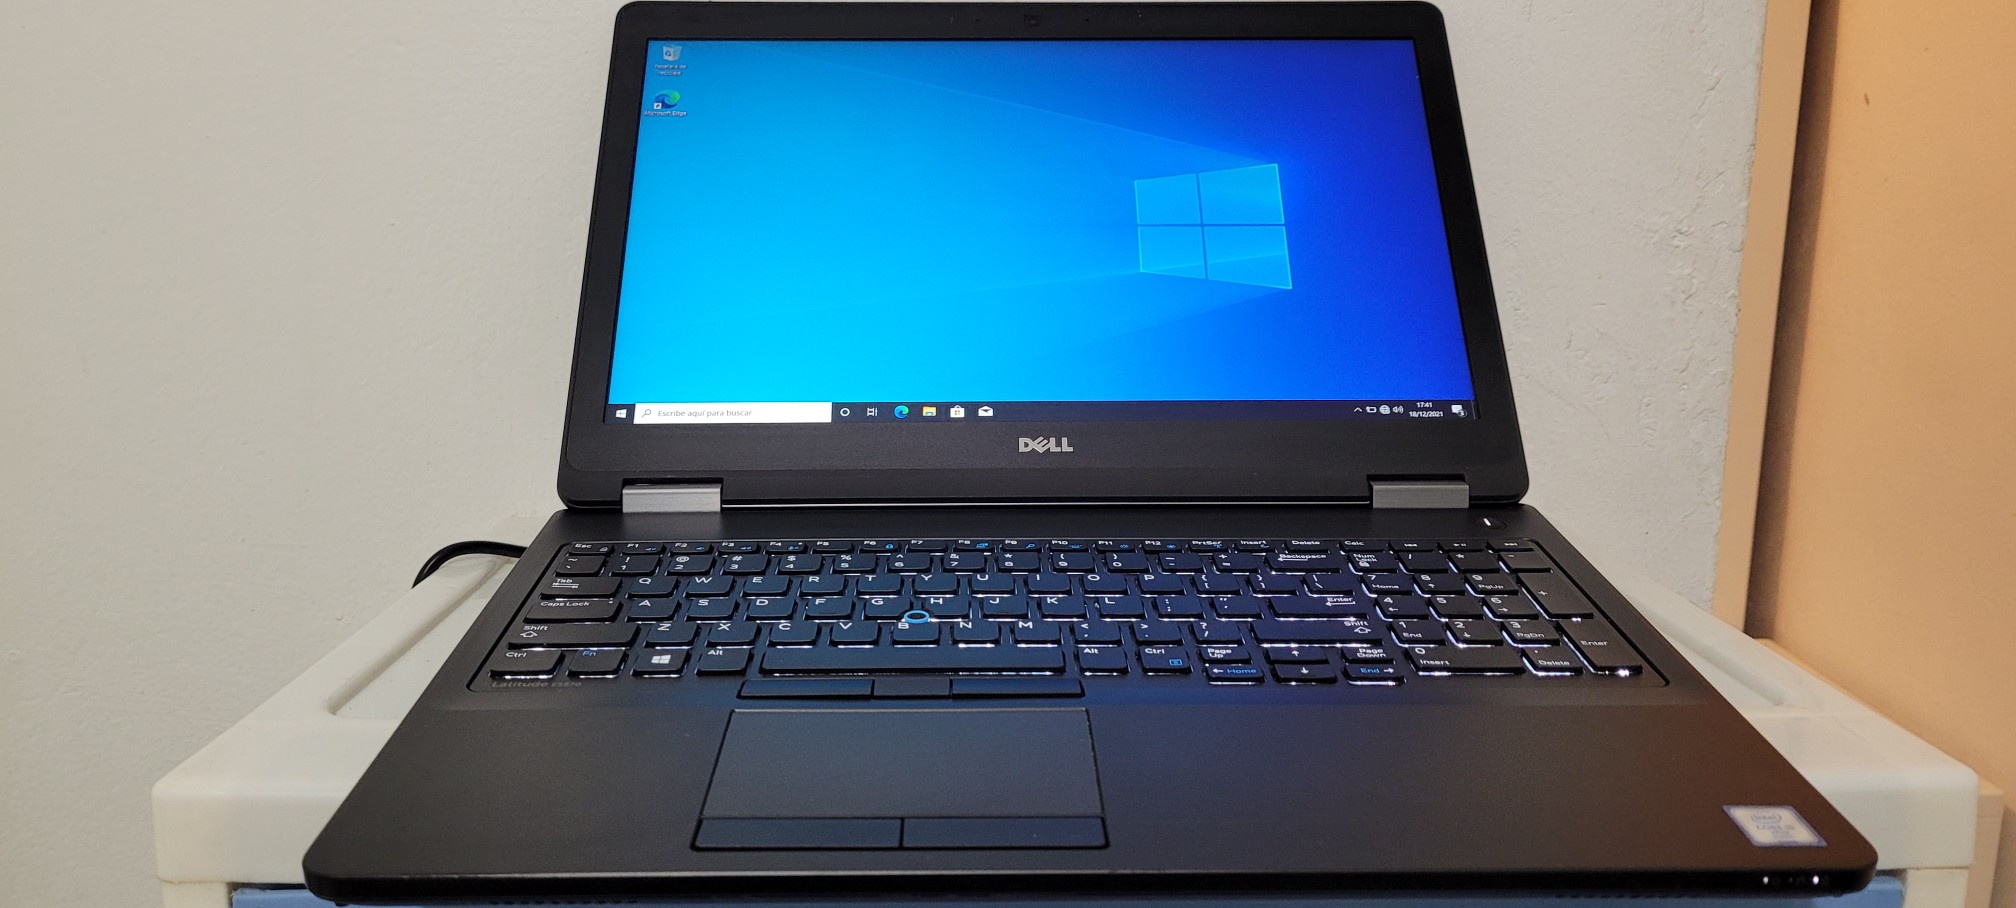 computadoras y laptops - Nueva Dell 5570 17 Pulg Core i7 6ta Gen Ram 16gb Disco 512gb SSD Video 8gb